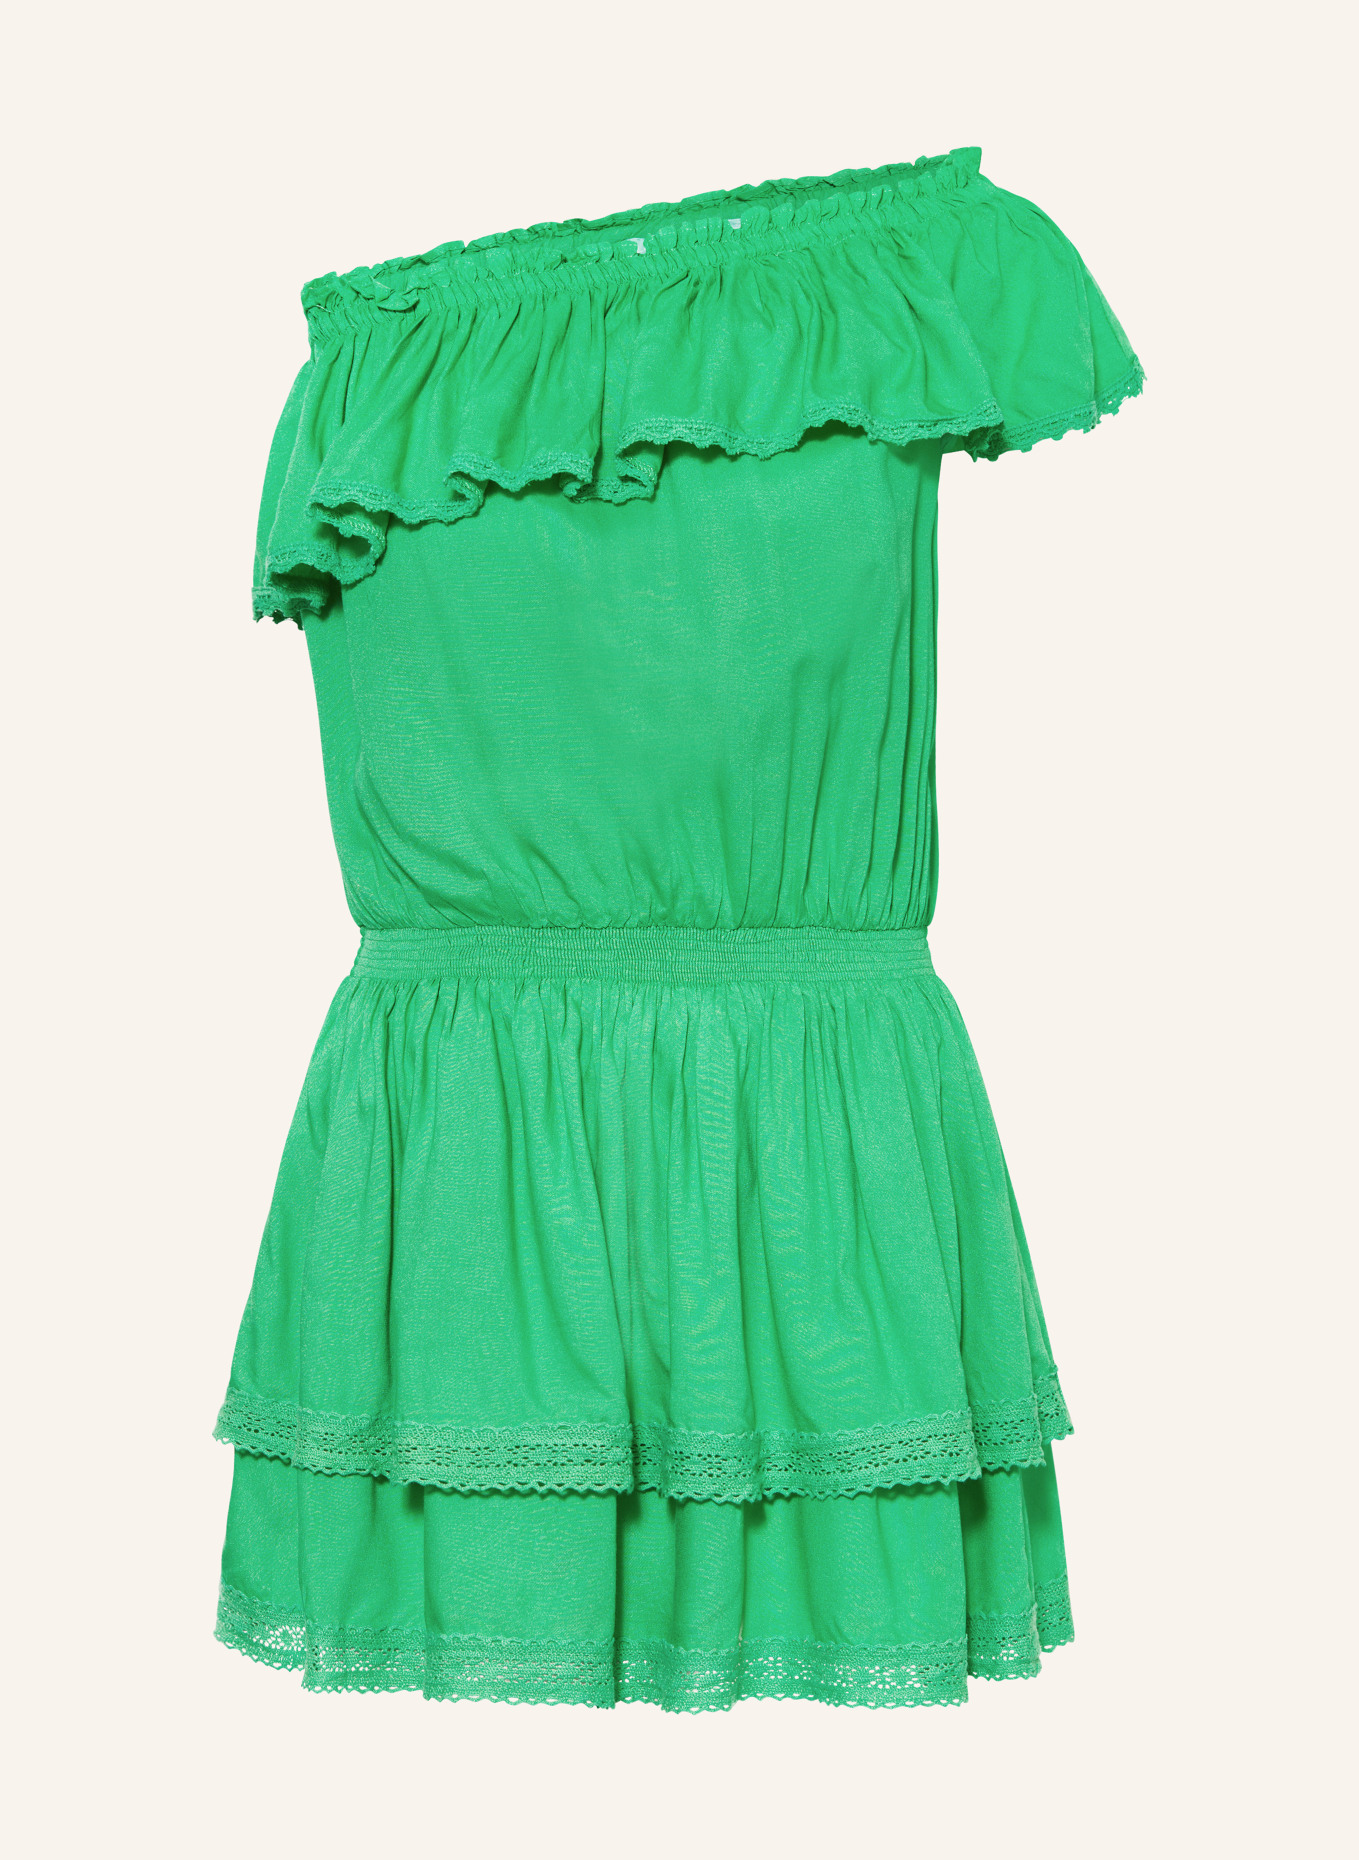 MELISSA ODABASH One-Shoulder-Kleid DEBBIE mit Rüschen, Farbe: GRÜN (Bild 1)